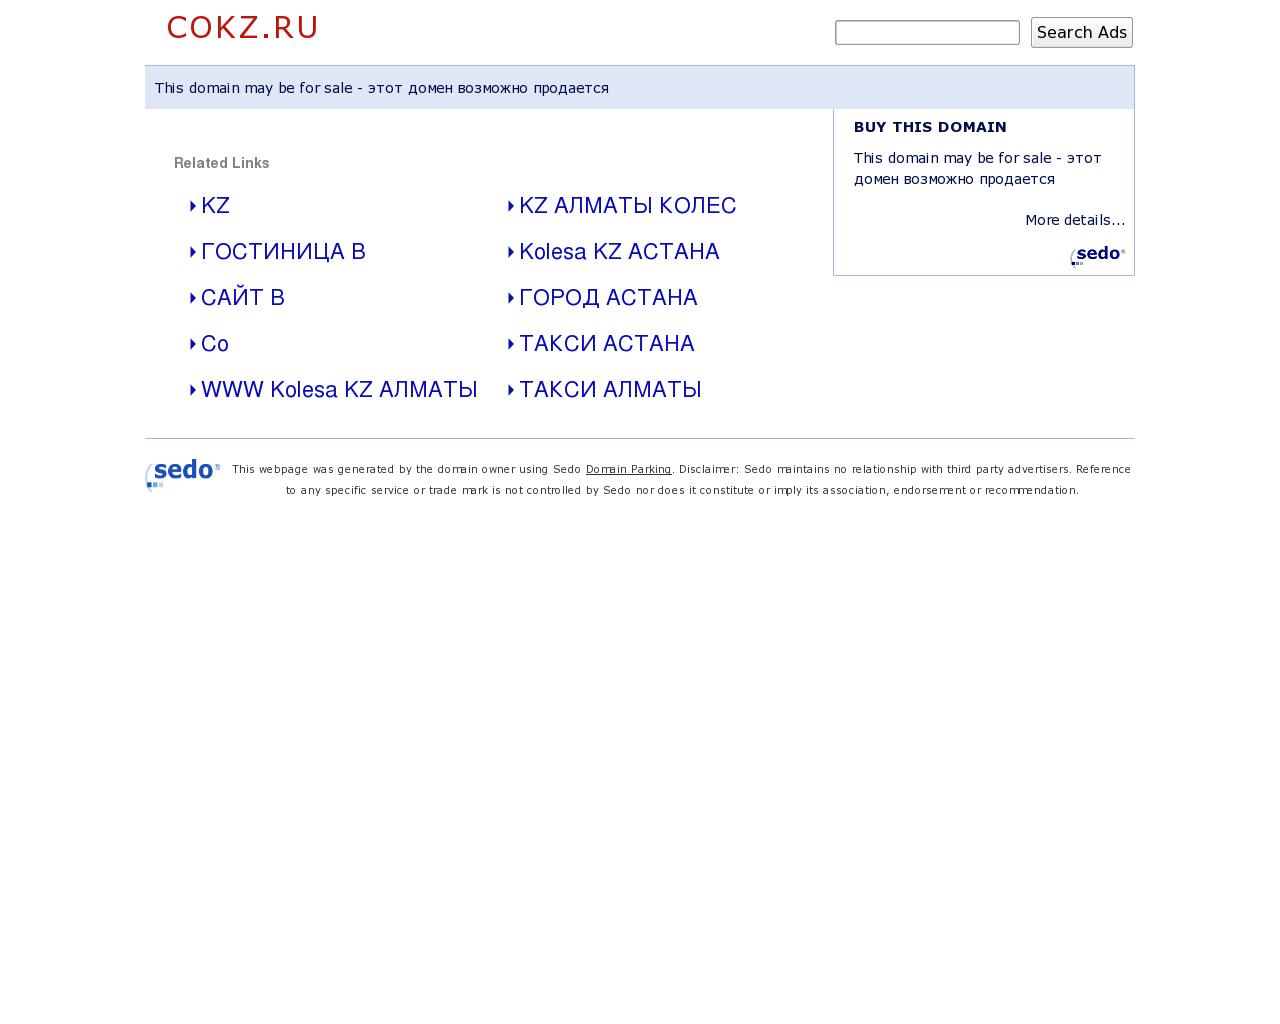 Изображение сайта cokz.ru в разрешении 1280x1024